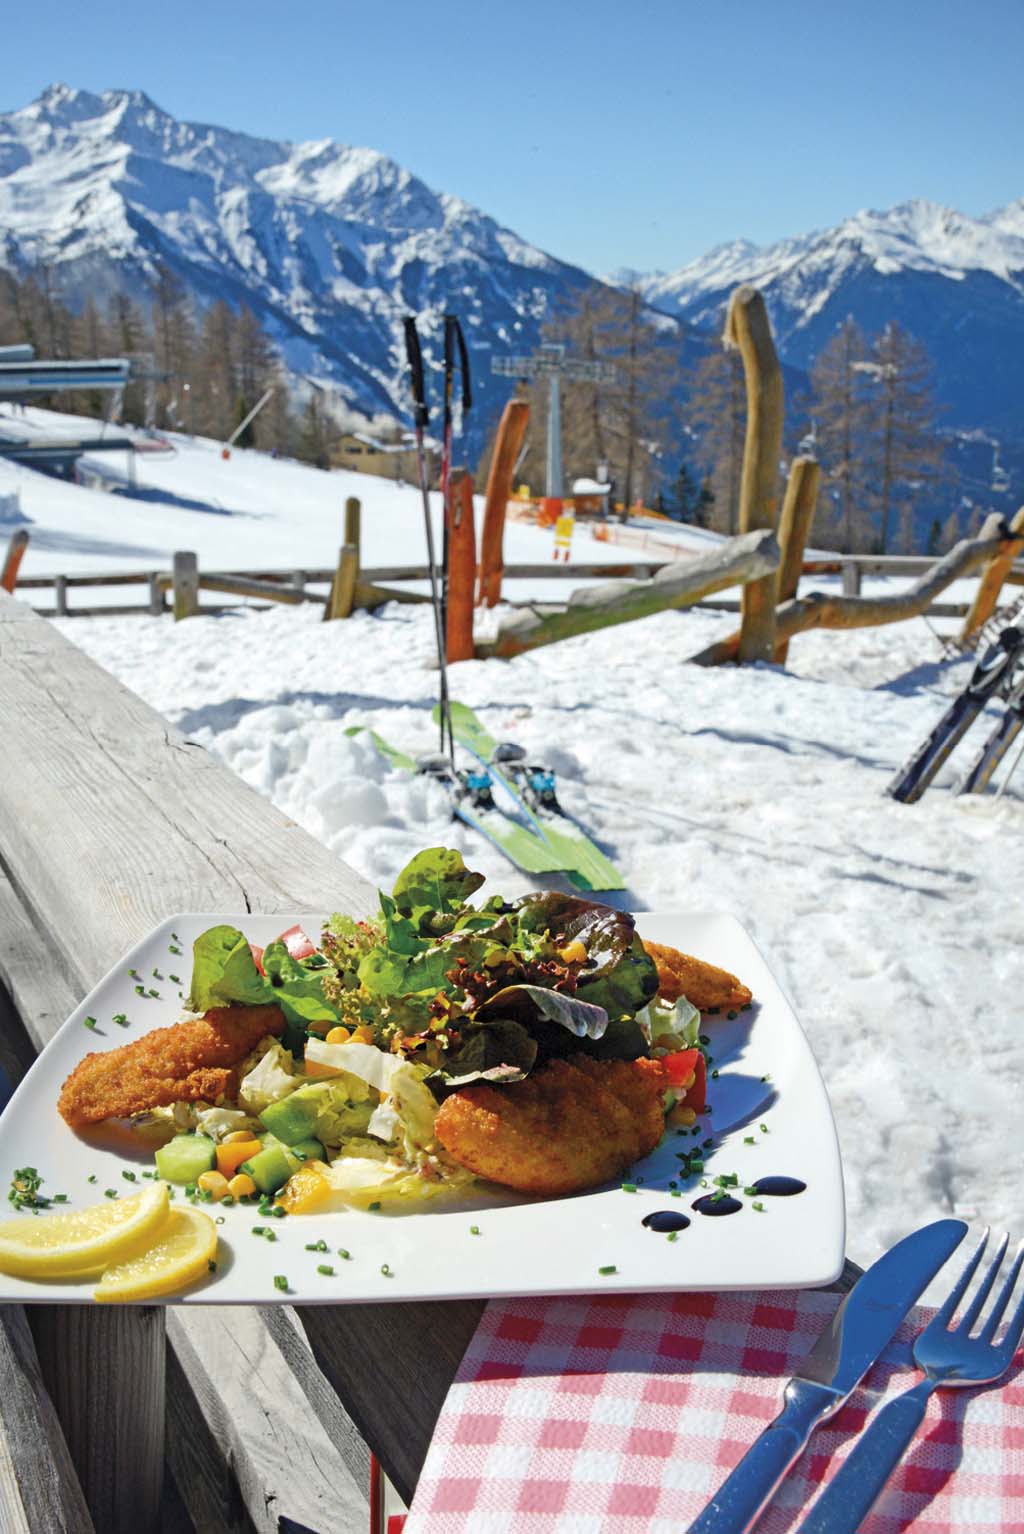  Venet je menší středisko v tyrolském okrese Landek. Jako všude v Rakousku, i tady umějí připravit a servírovat skvělou gastronomii 